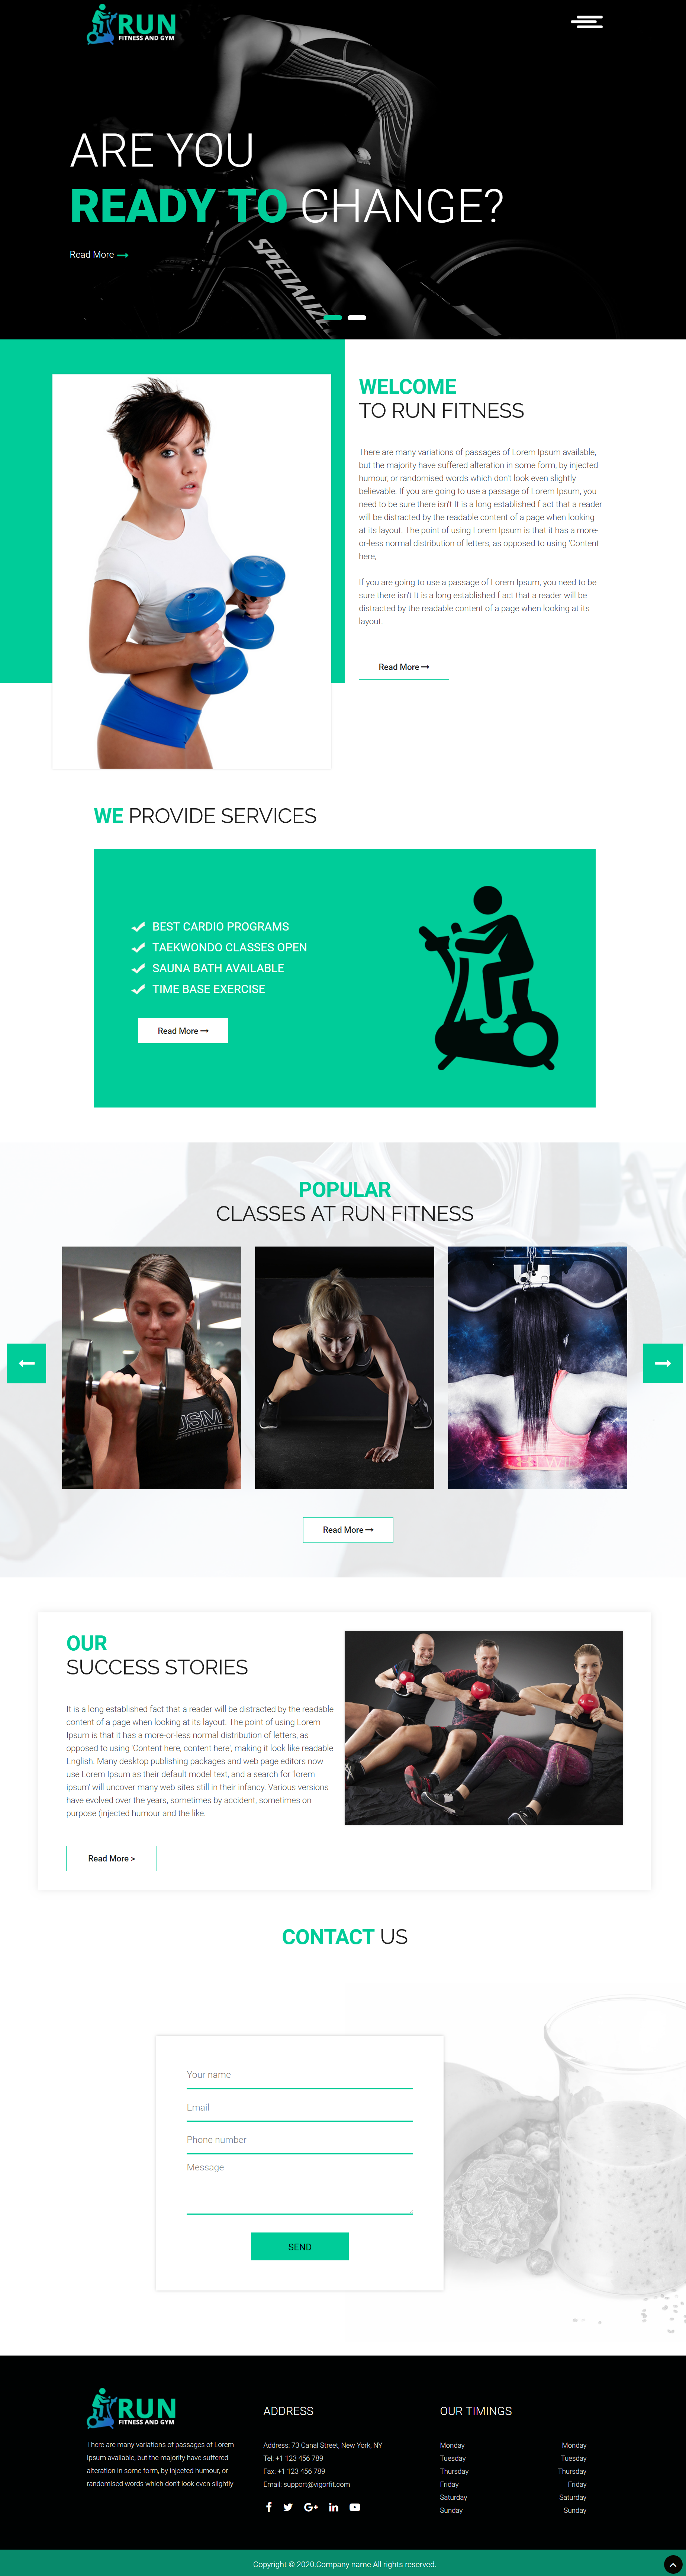 绿色简洁风格响应式健身运动课程企业网站模板